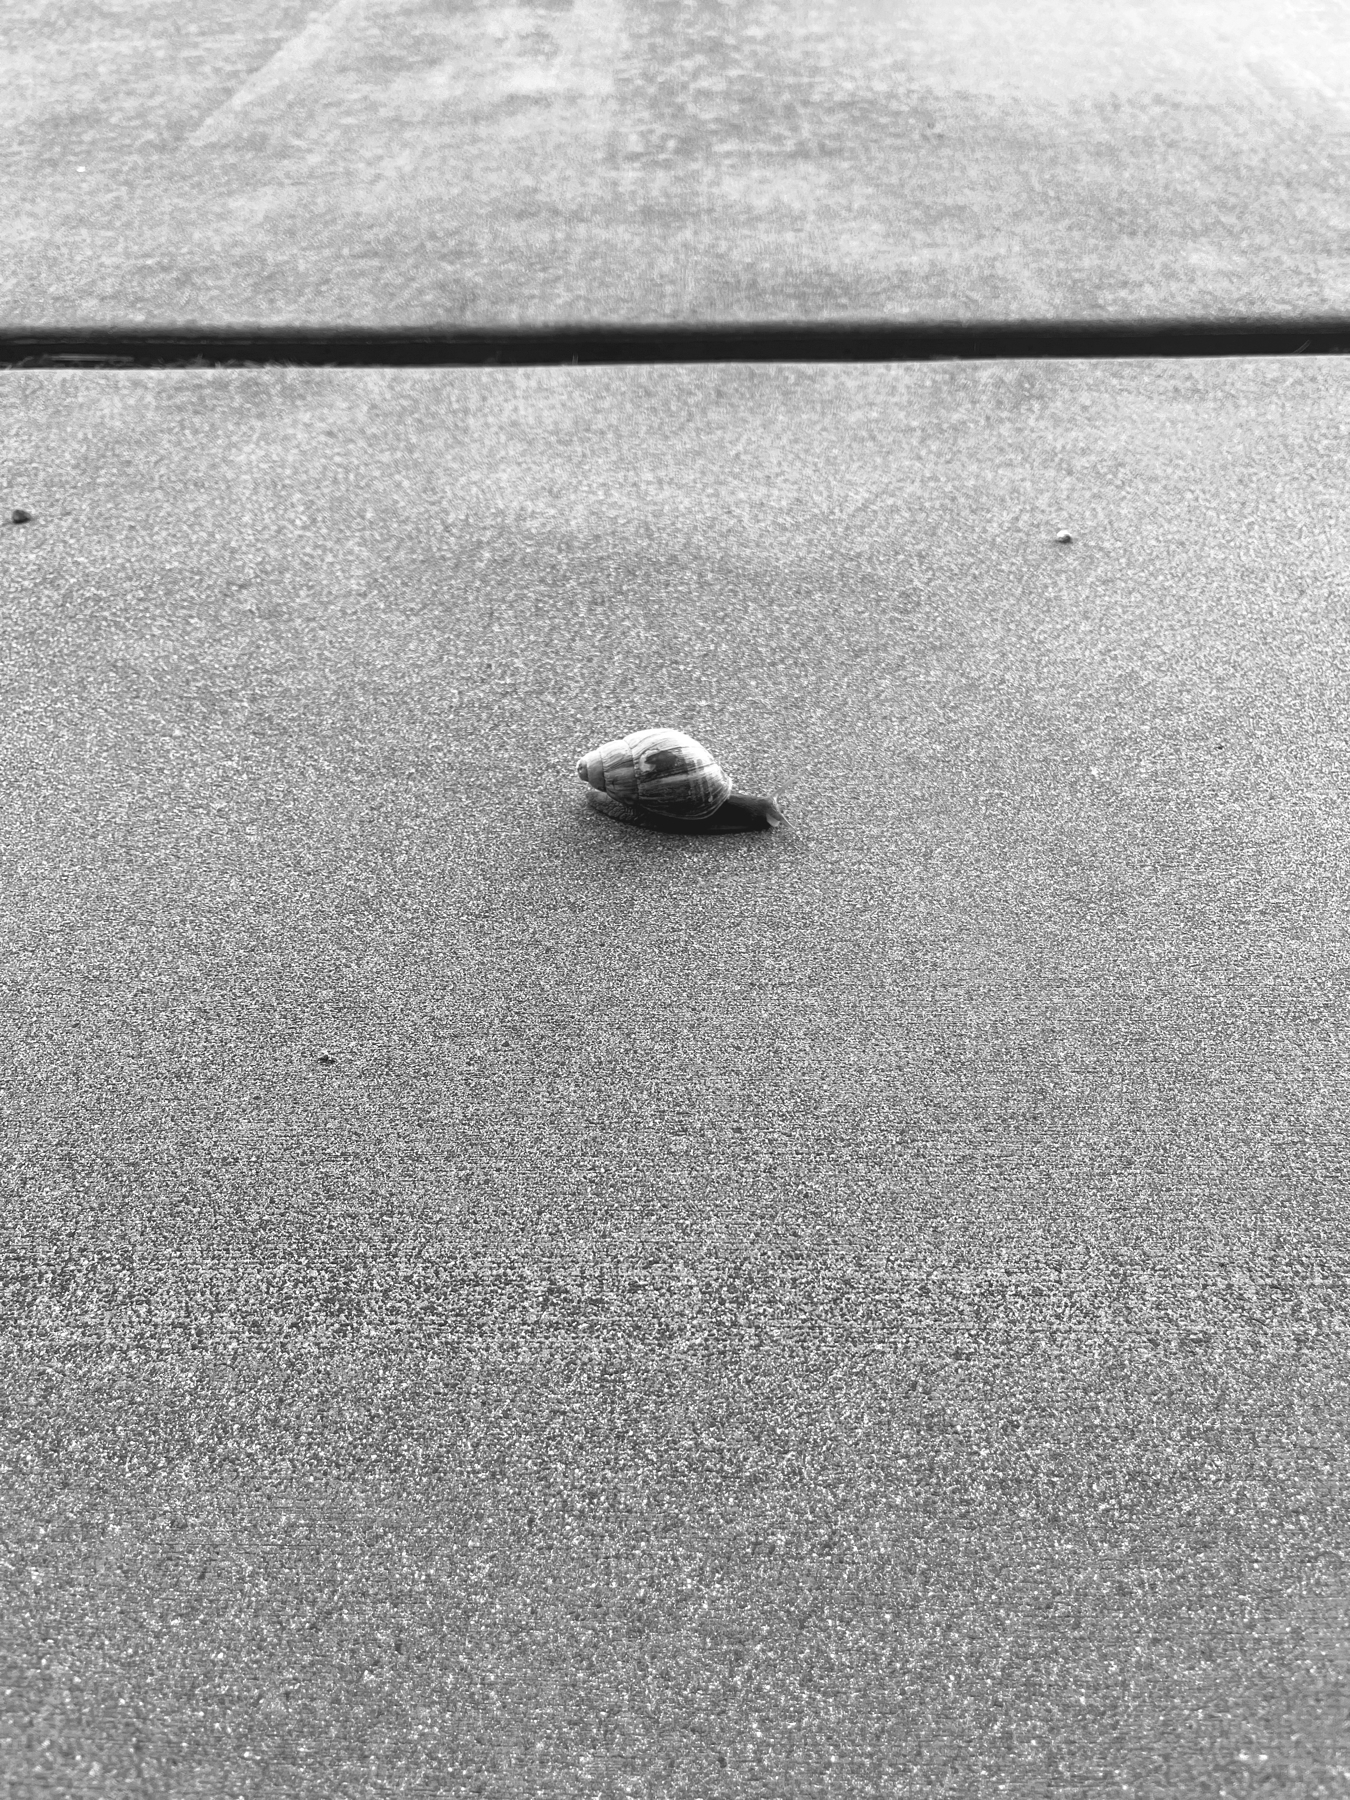 A large snail sliding slowly across concrete